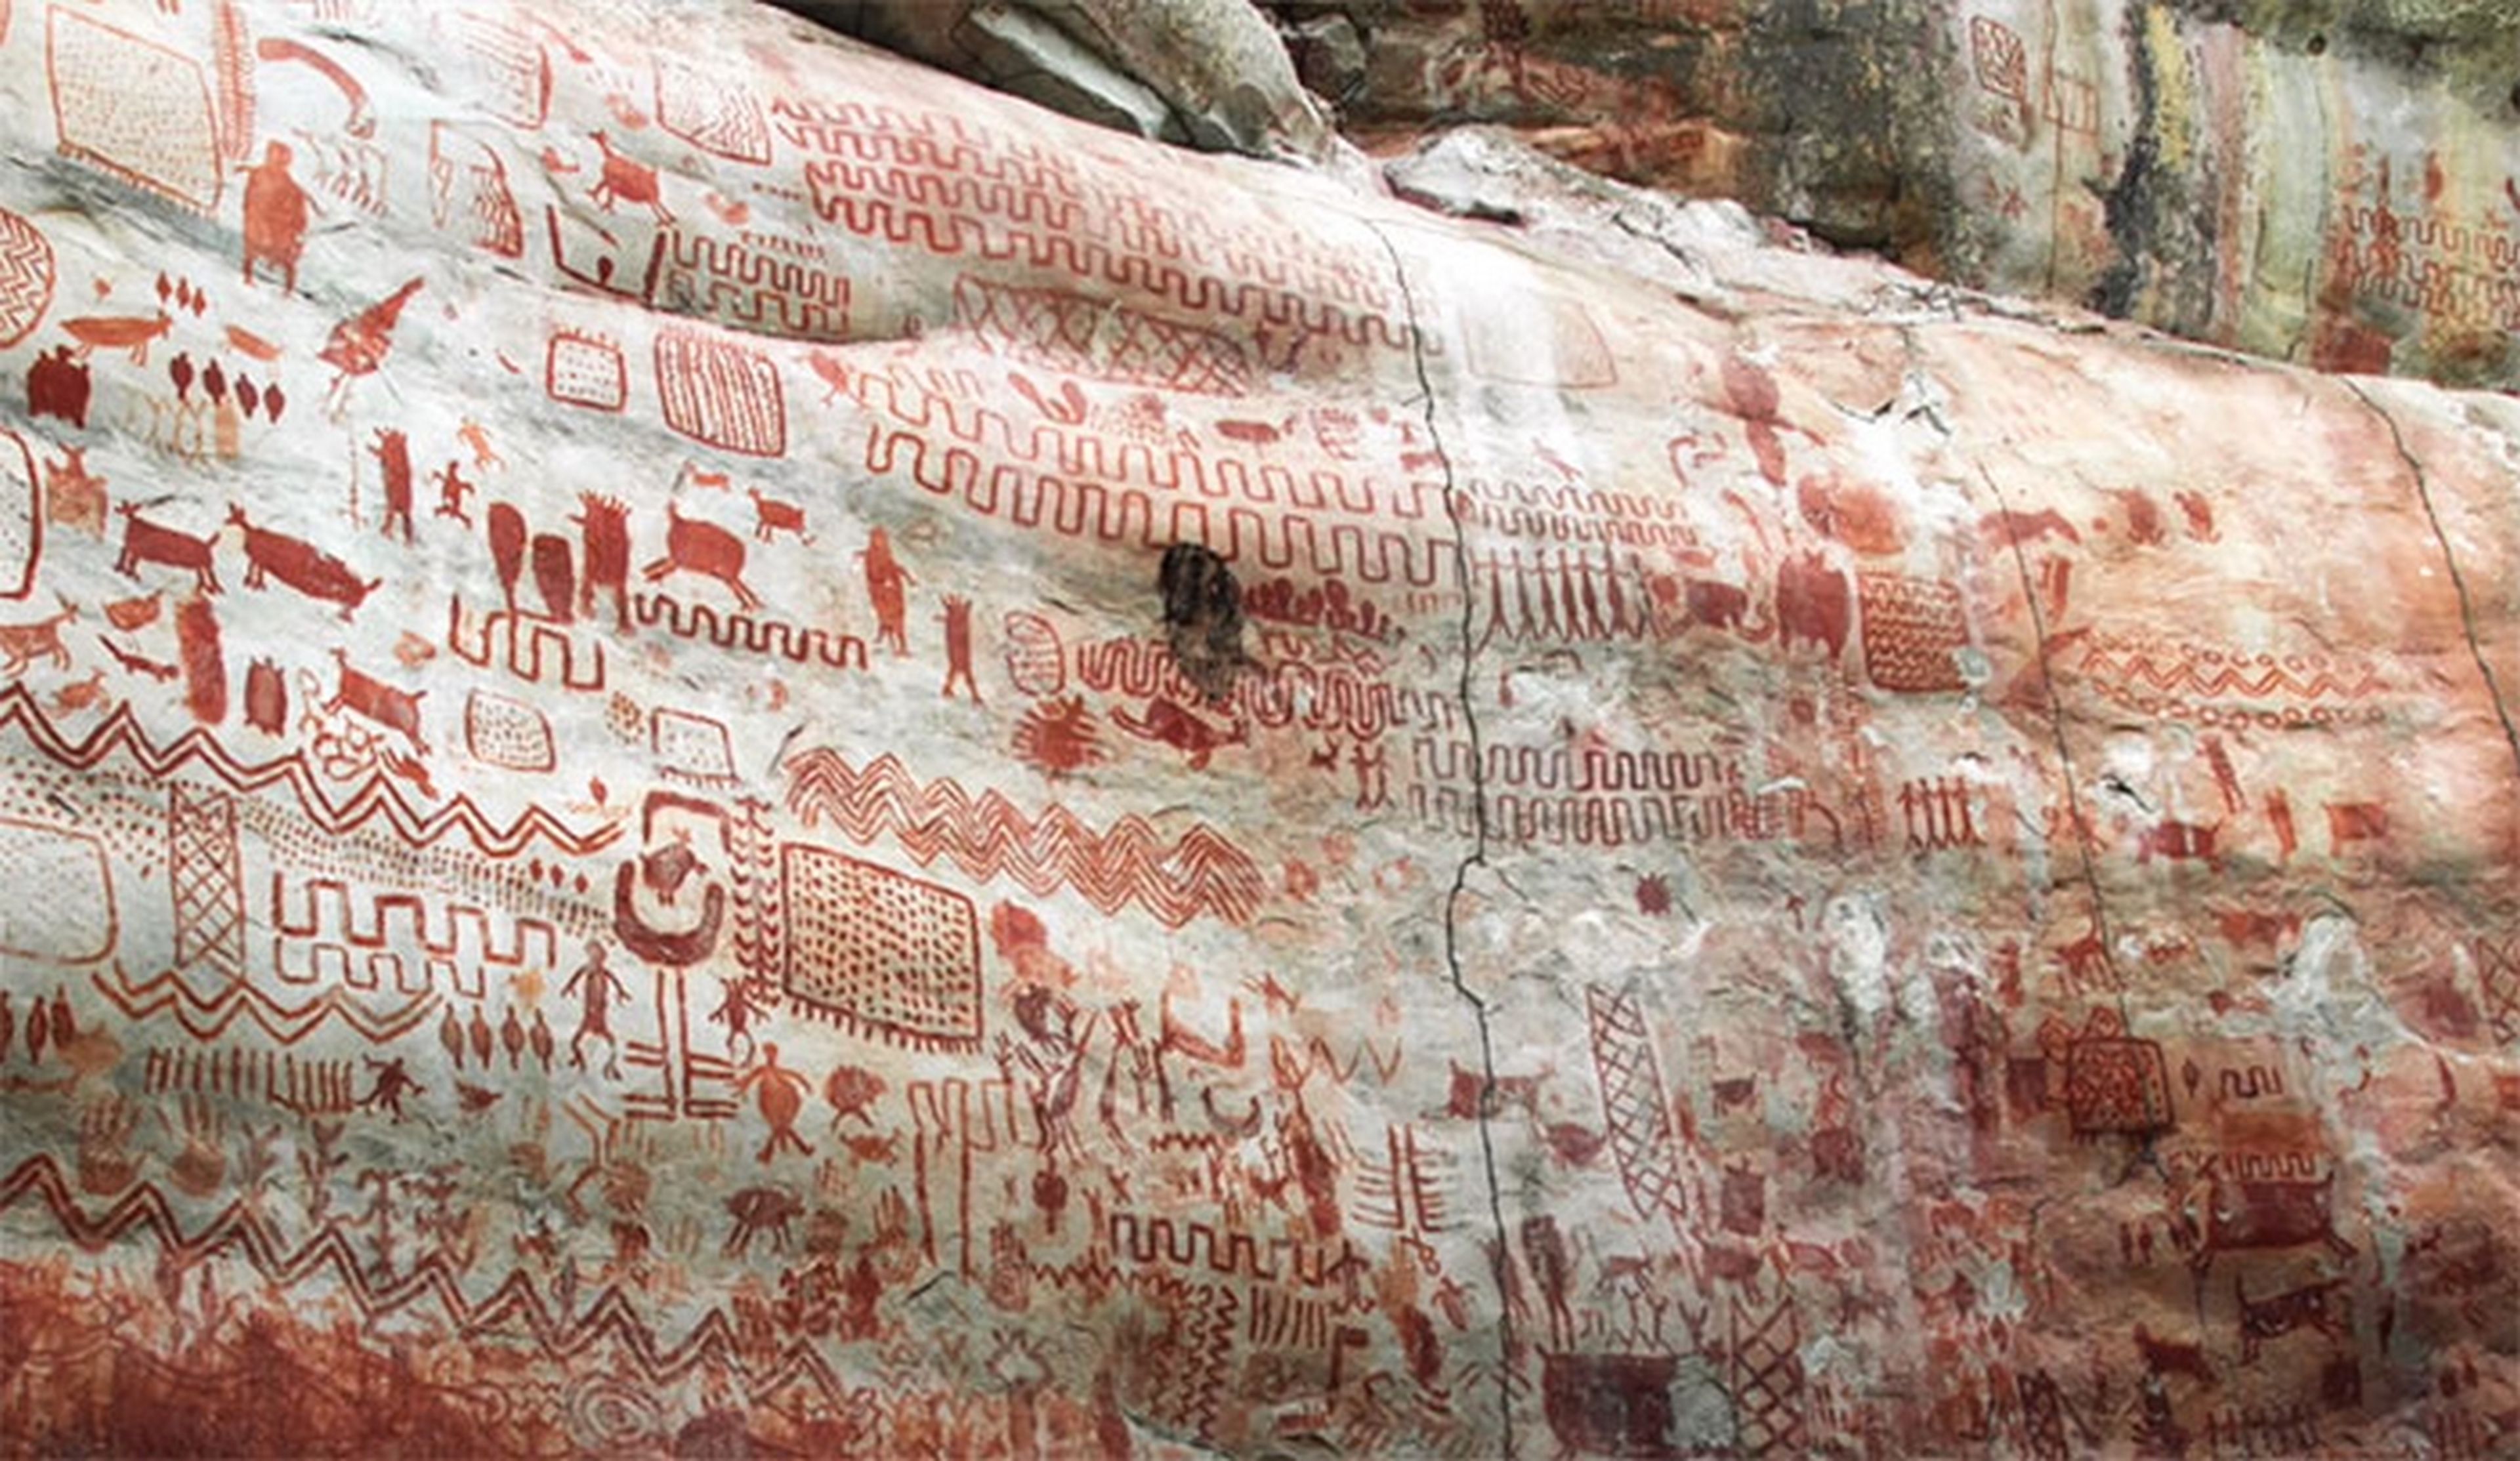 Descubren 10 kilómetros de pinturas rupestres ocultas en el Amazonas que muestran animales ya extinguidos